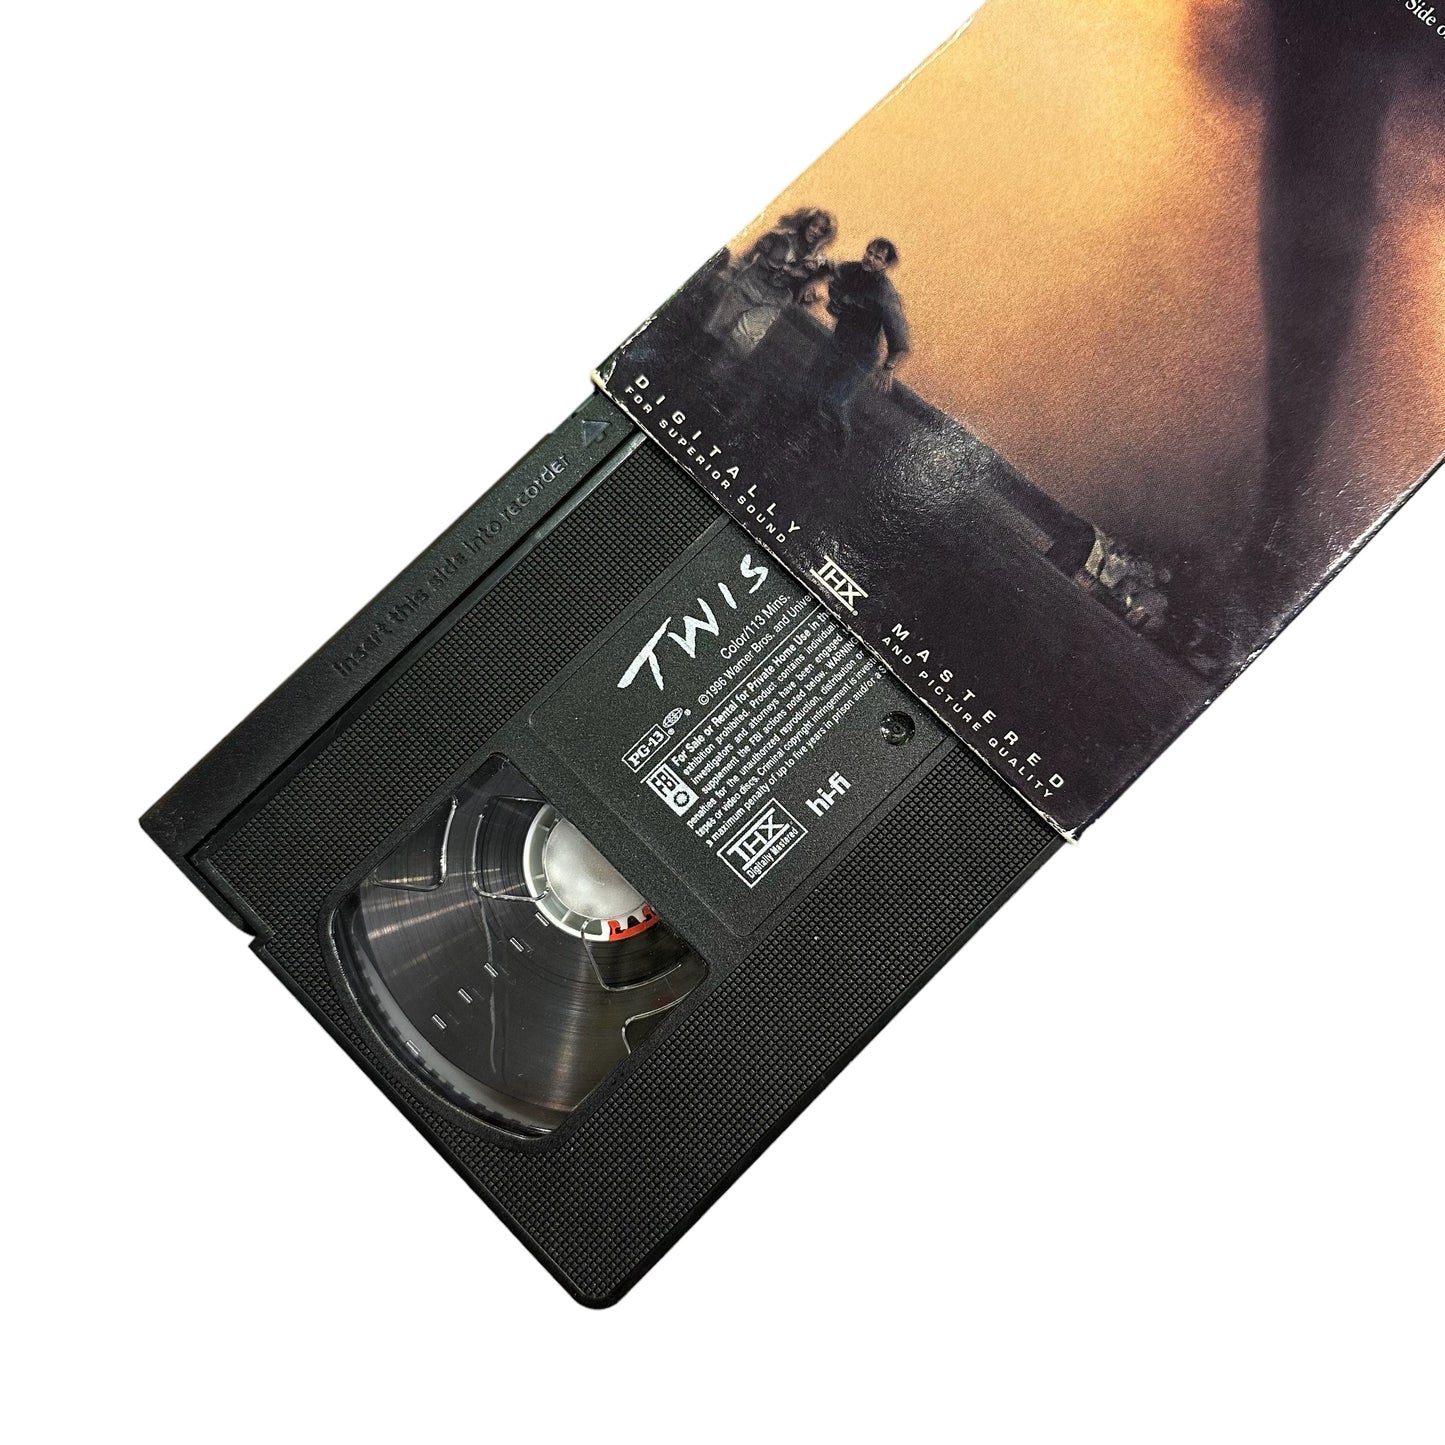 VHS ビデオテープ 輸入版 ツイスター TWISTER 海外版 USA アメリカ ヴィンテージ ビデオ 紙ジャケ